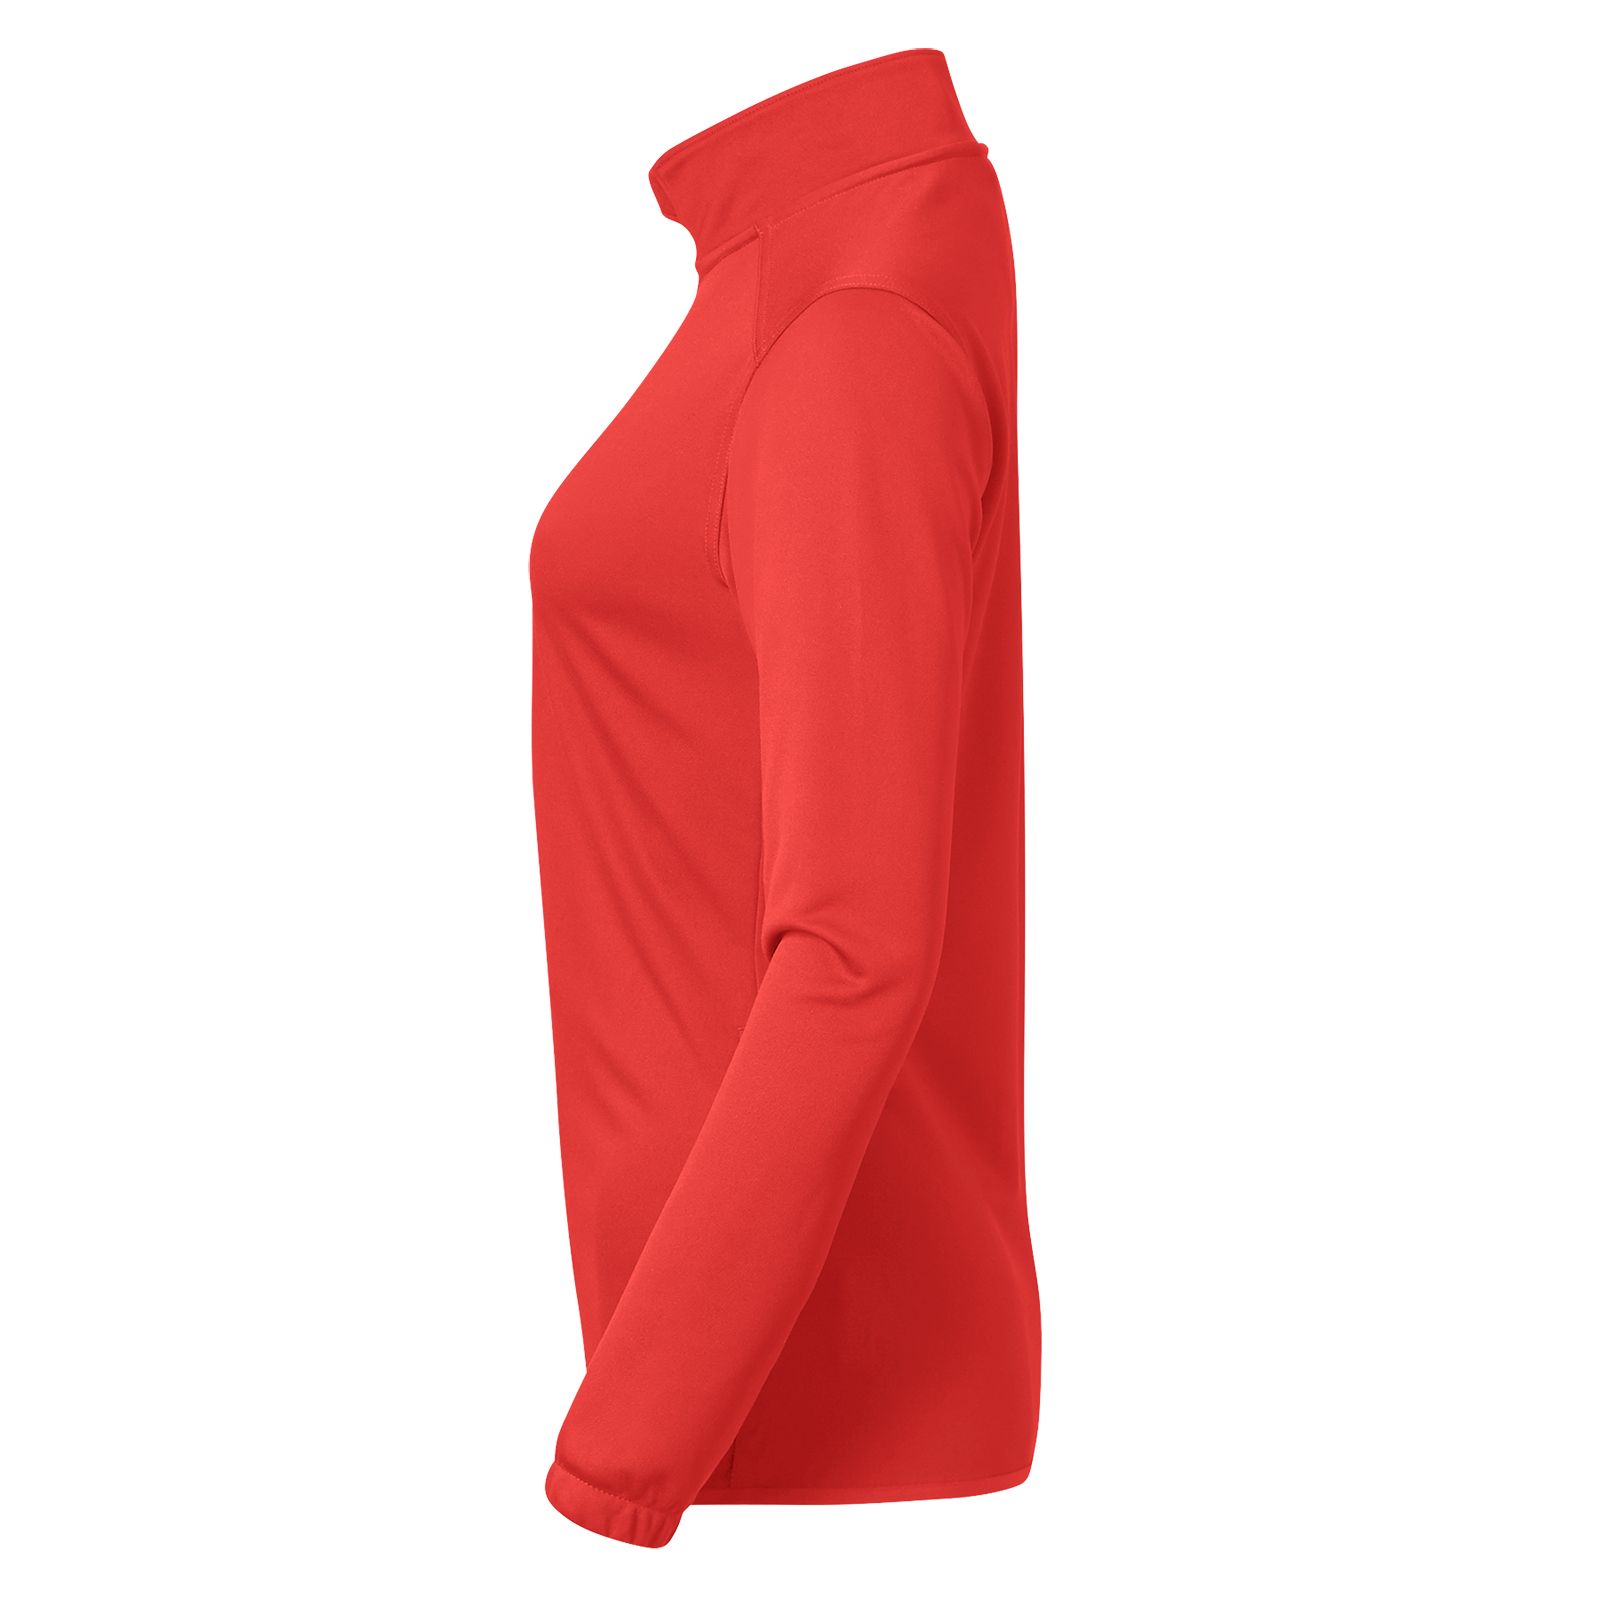 NBW Custom Knit Training Jacket, Red image number 1